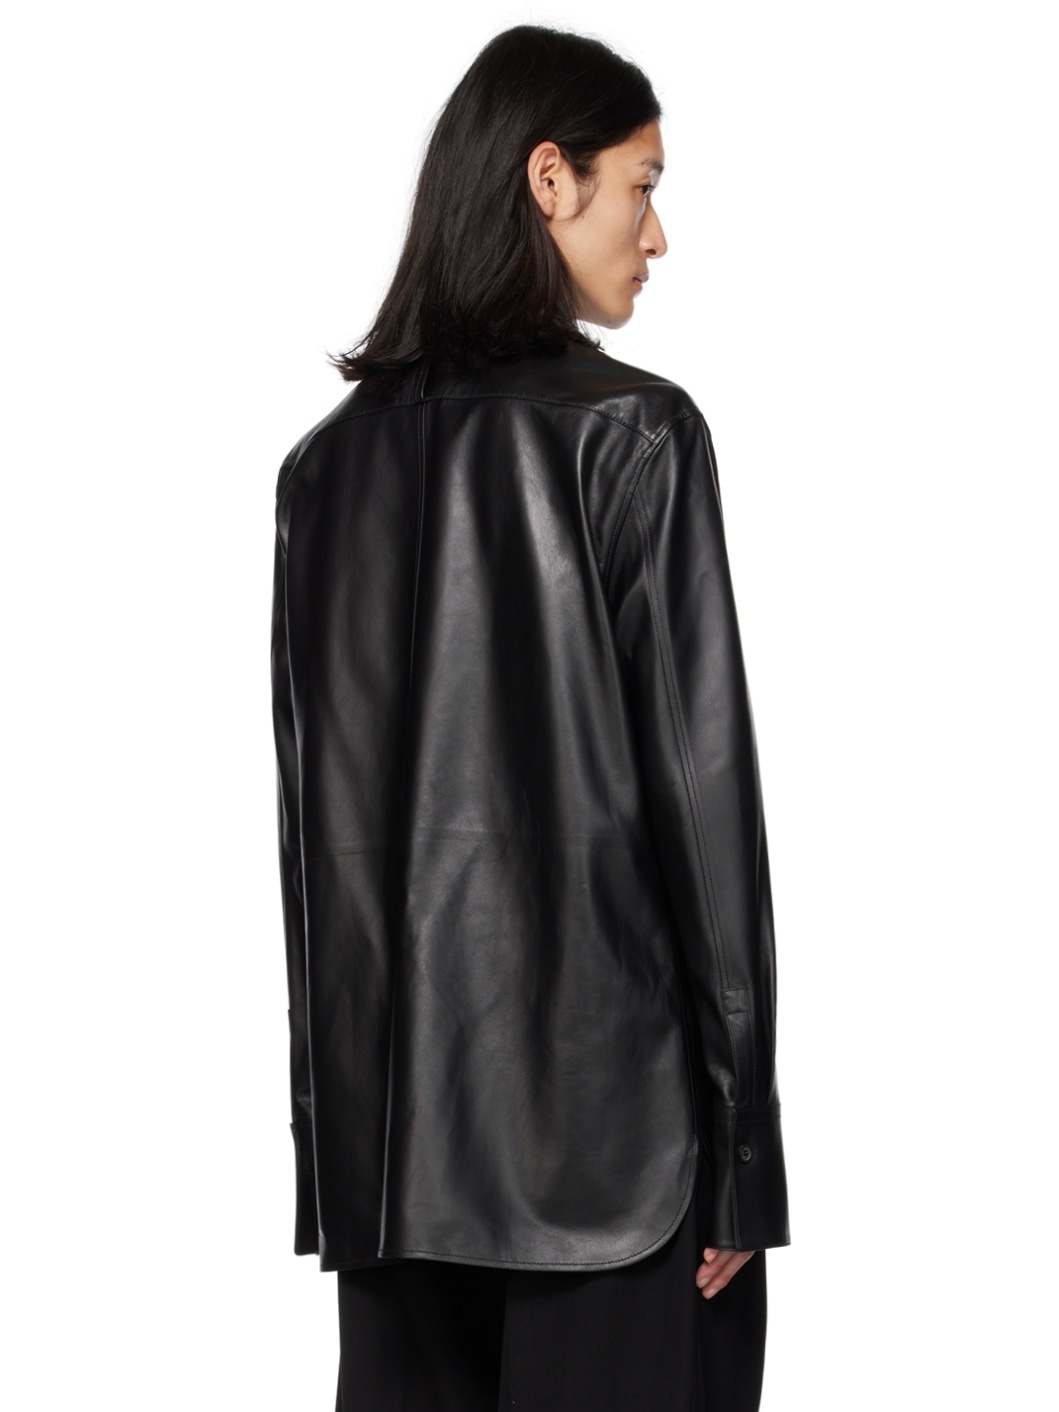 Black Paneled Leather Shirt - 3